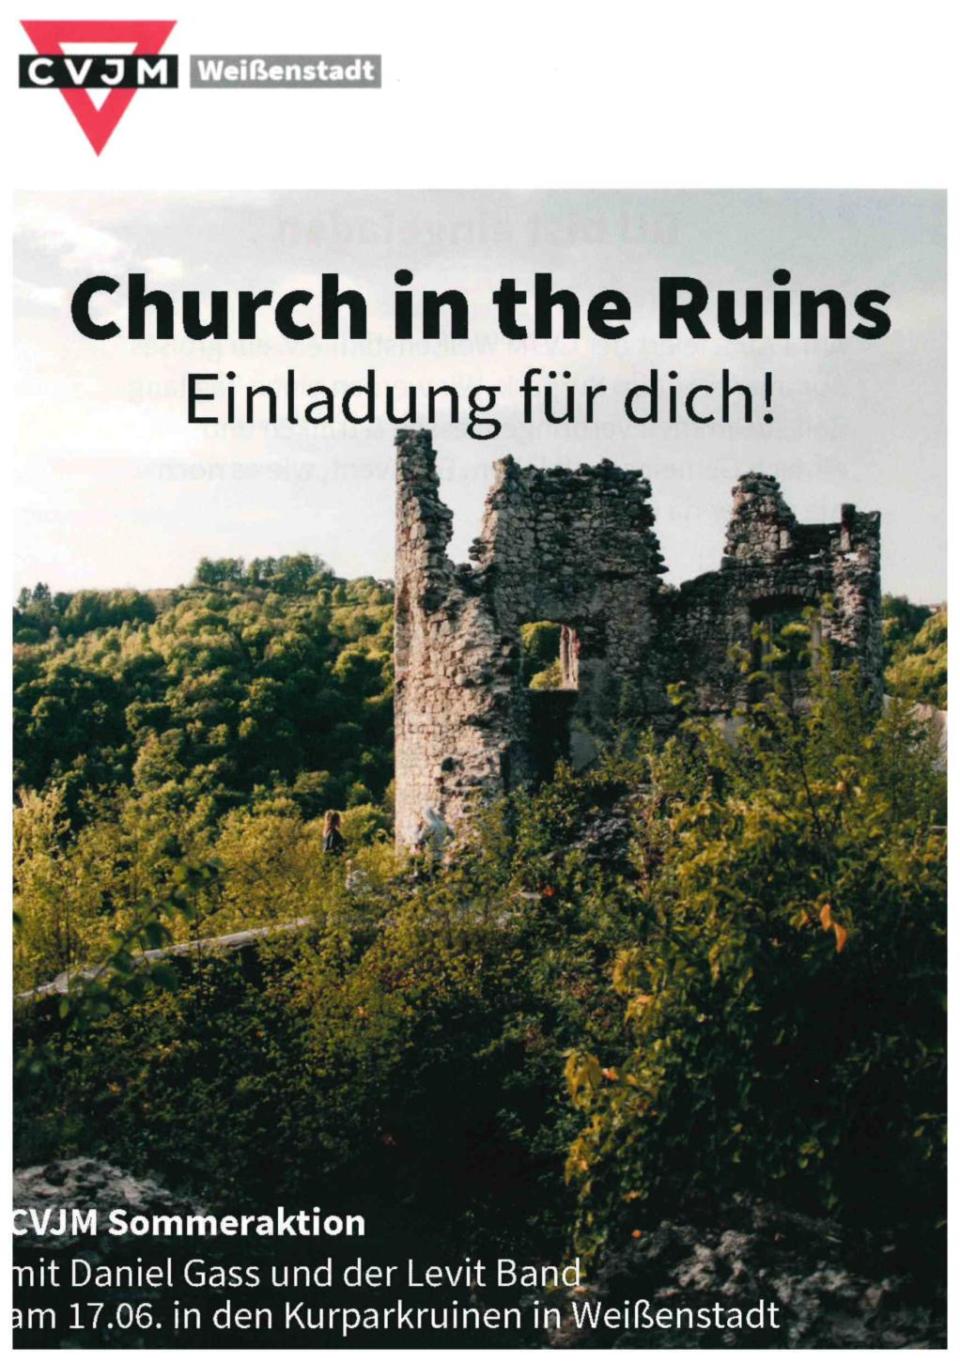 Church in the Ruins – Ein Event des CVJM